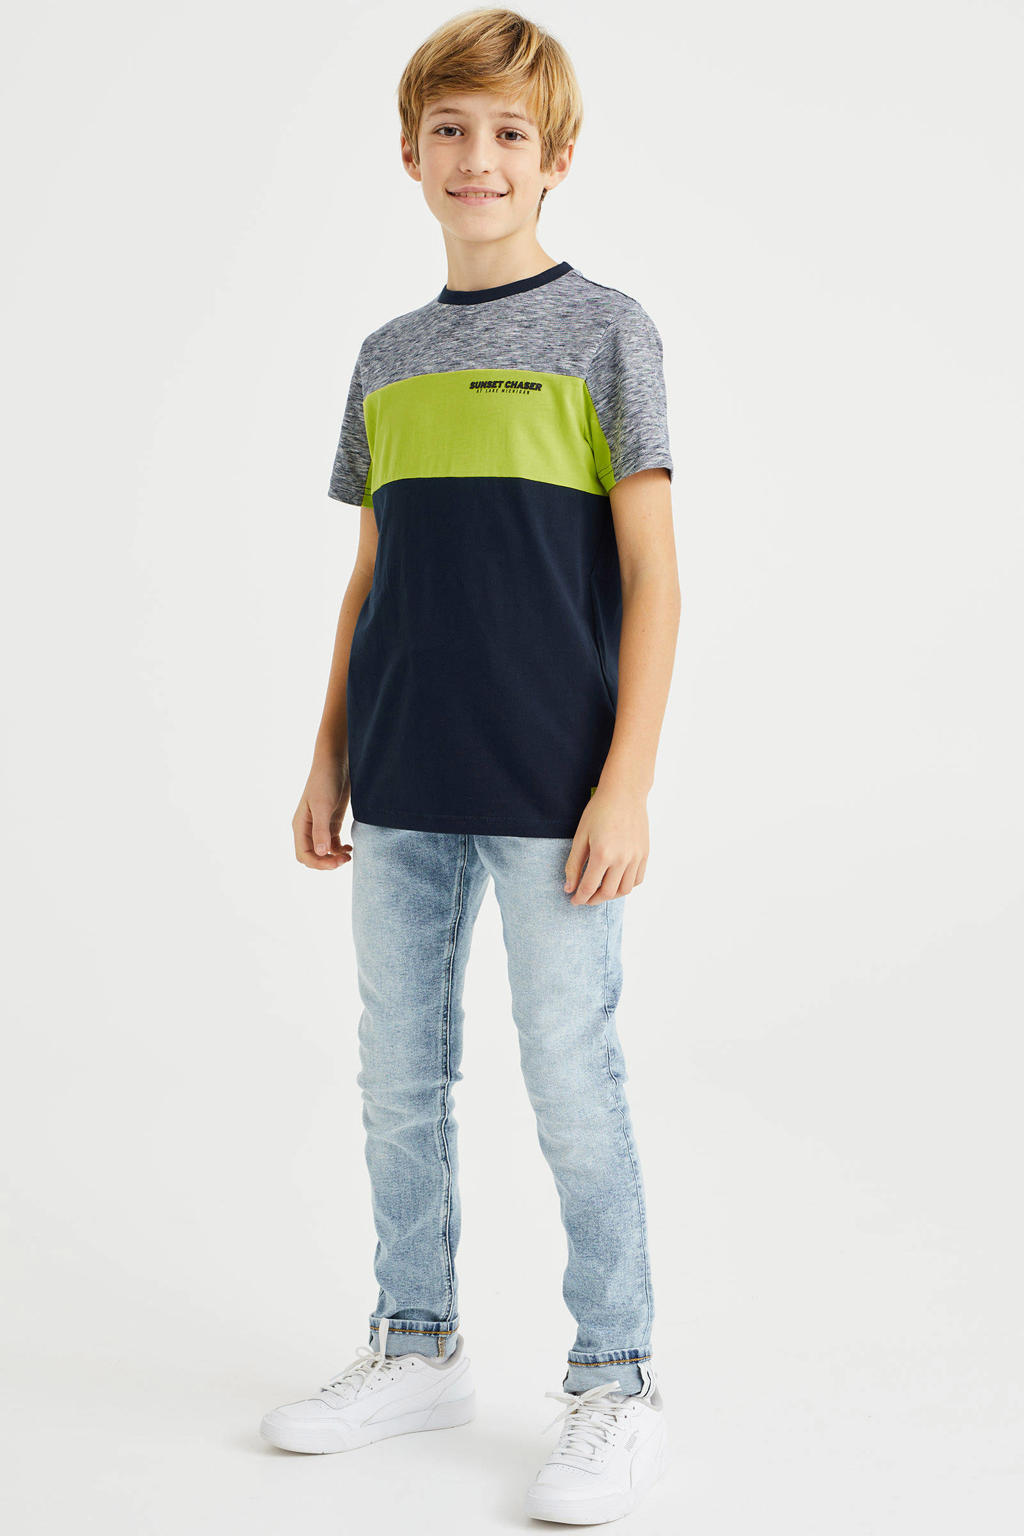 Groen, grijs en donkerblauwe jongens WE Fashion T-shirt van katoen met meerkleurige print, korte mouwen en ronde hals